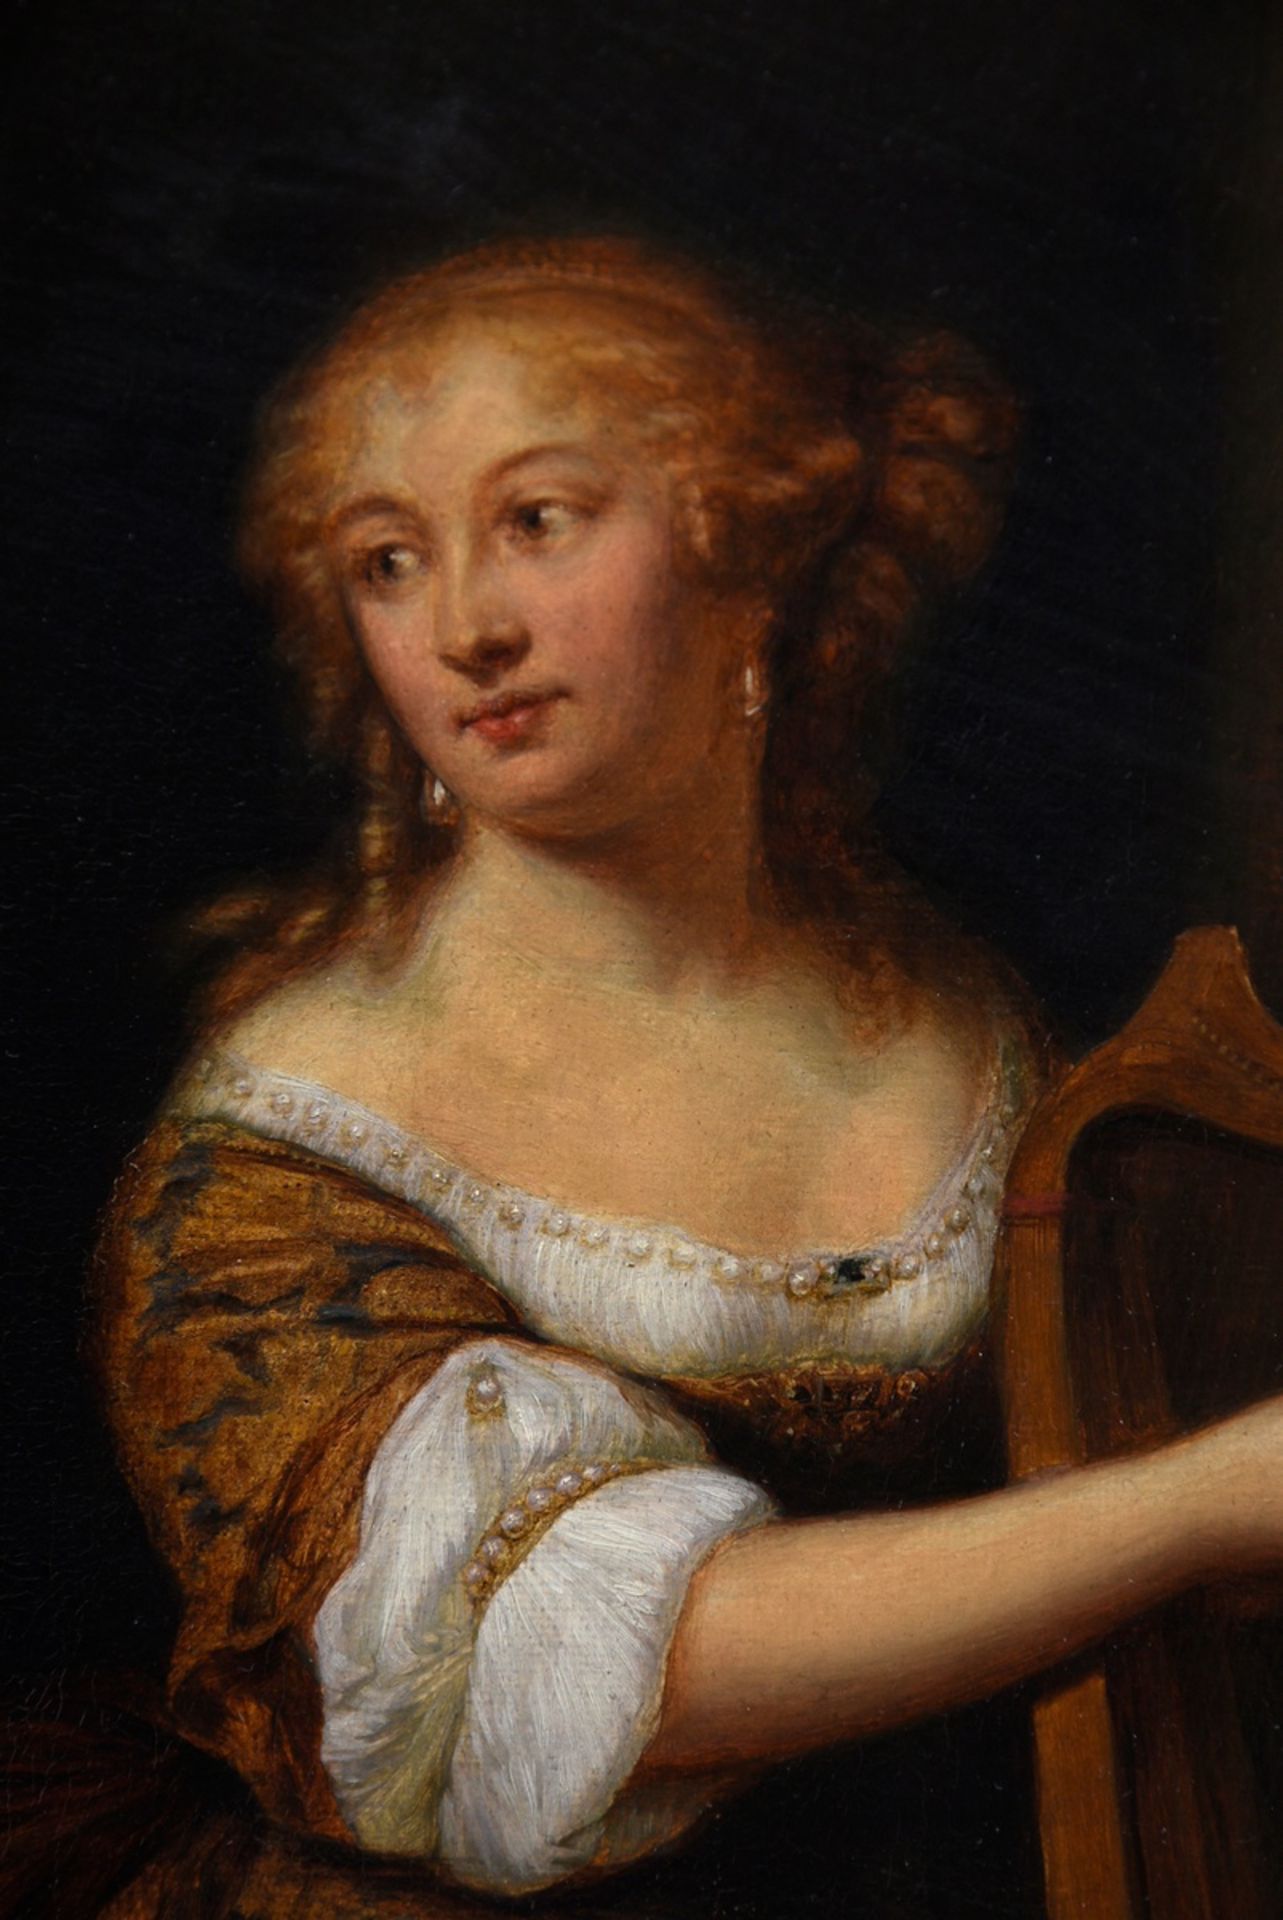 Stöckel, Peter (19th c.) "Madame de Montespan, playing the harp", after Caspar Netscher (1635/36-16 - Image 3 of 11